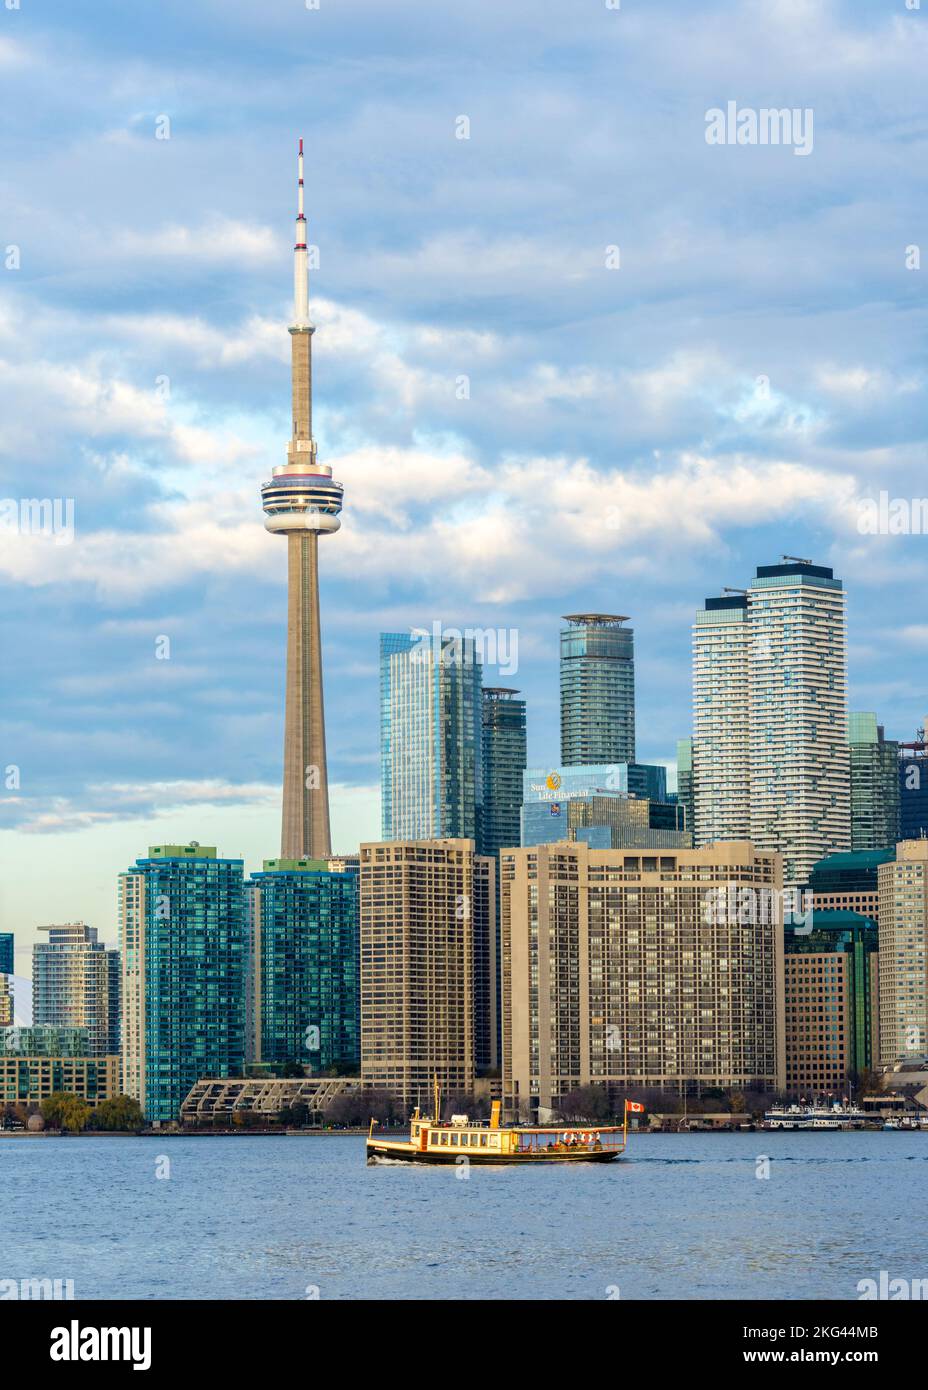 Navegue en barco por el lago Ontario con la Torre CN y el horizonte del centro de Toronto al fondo Foto de stock